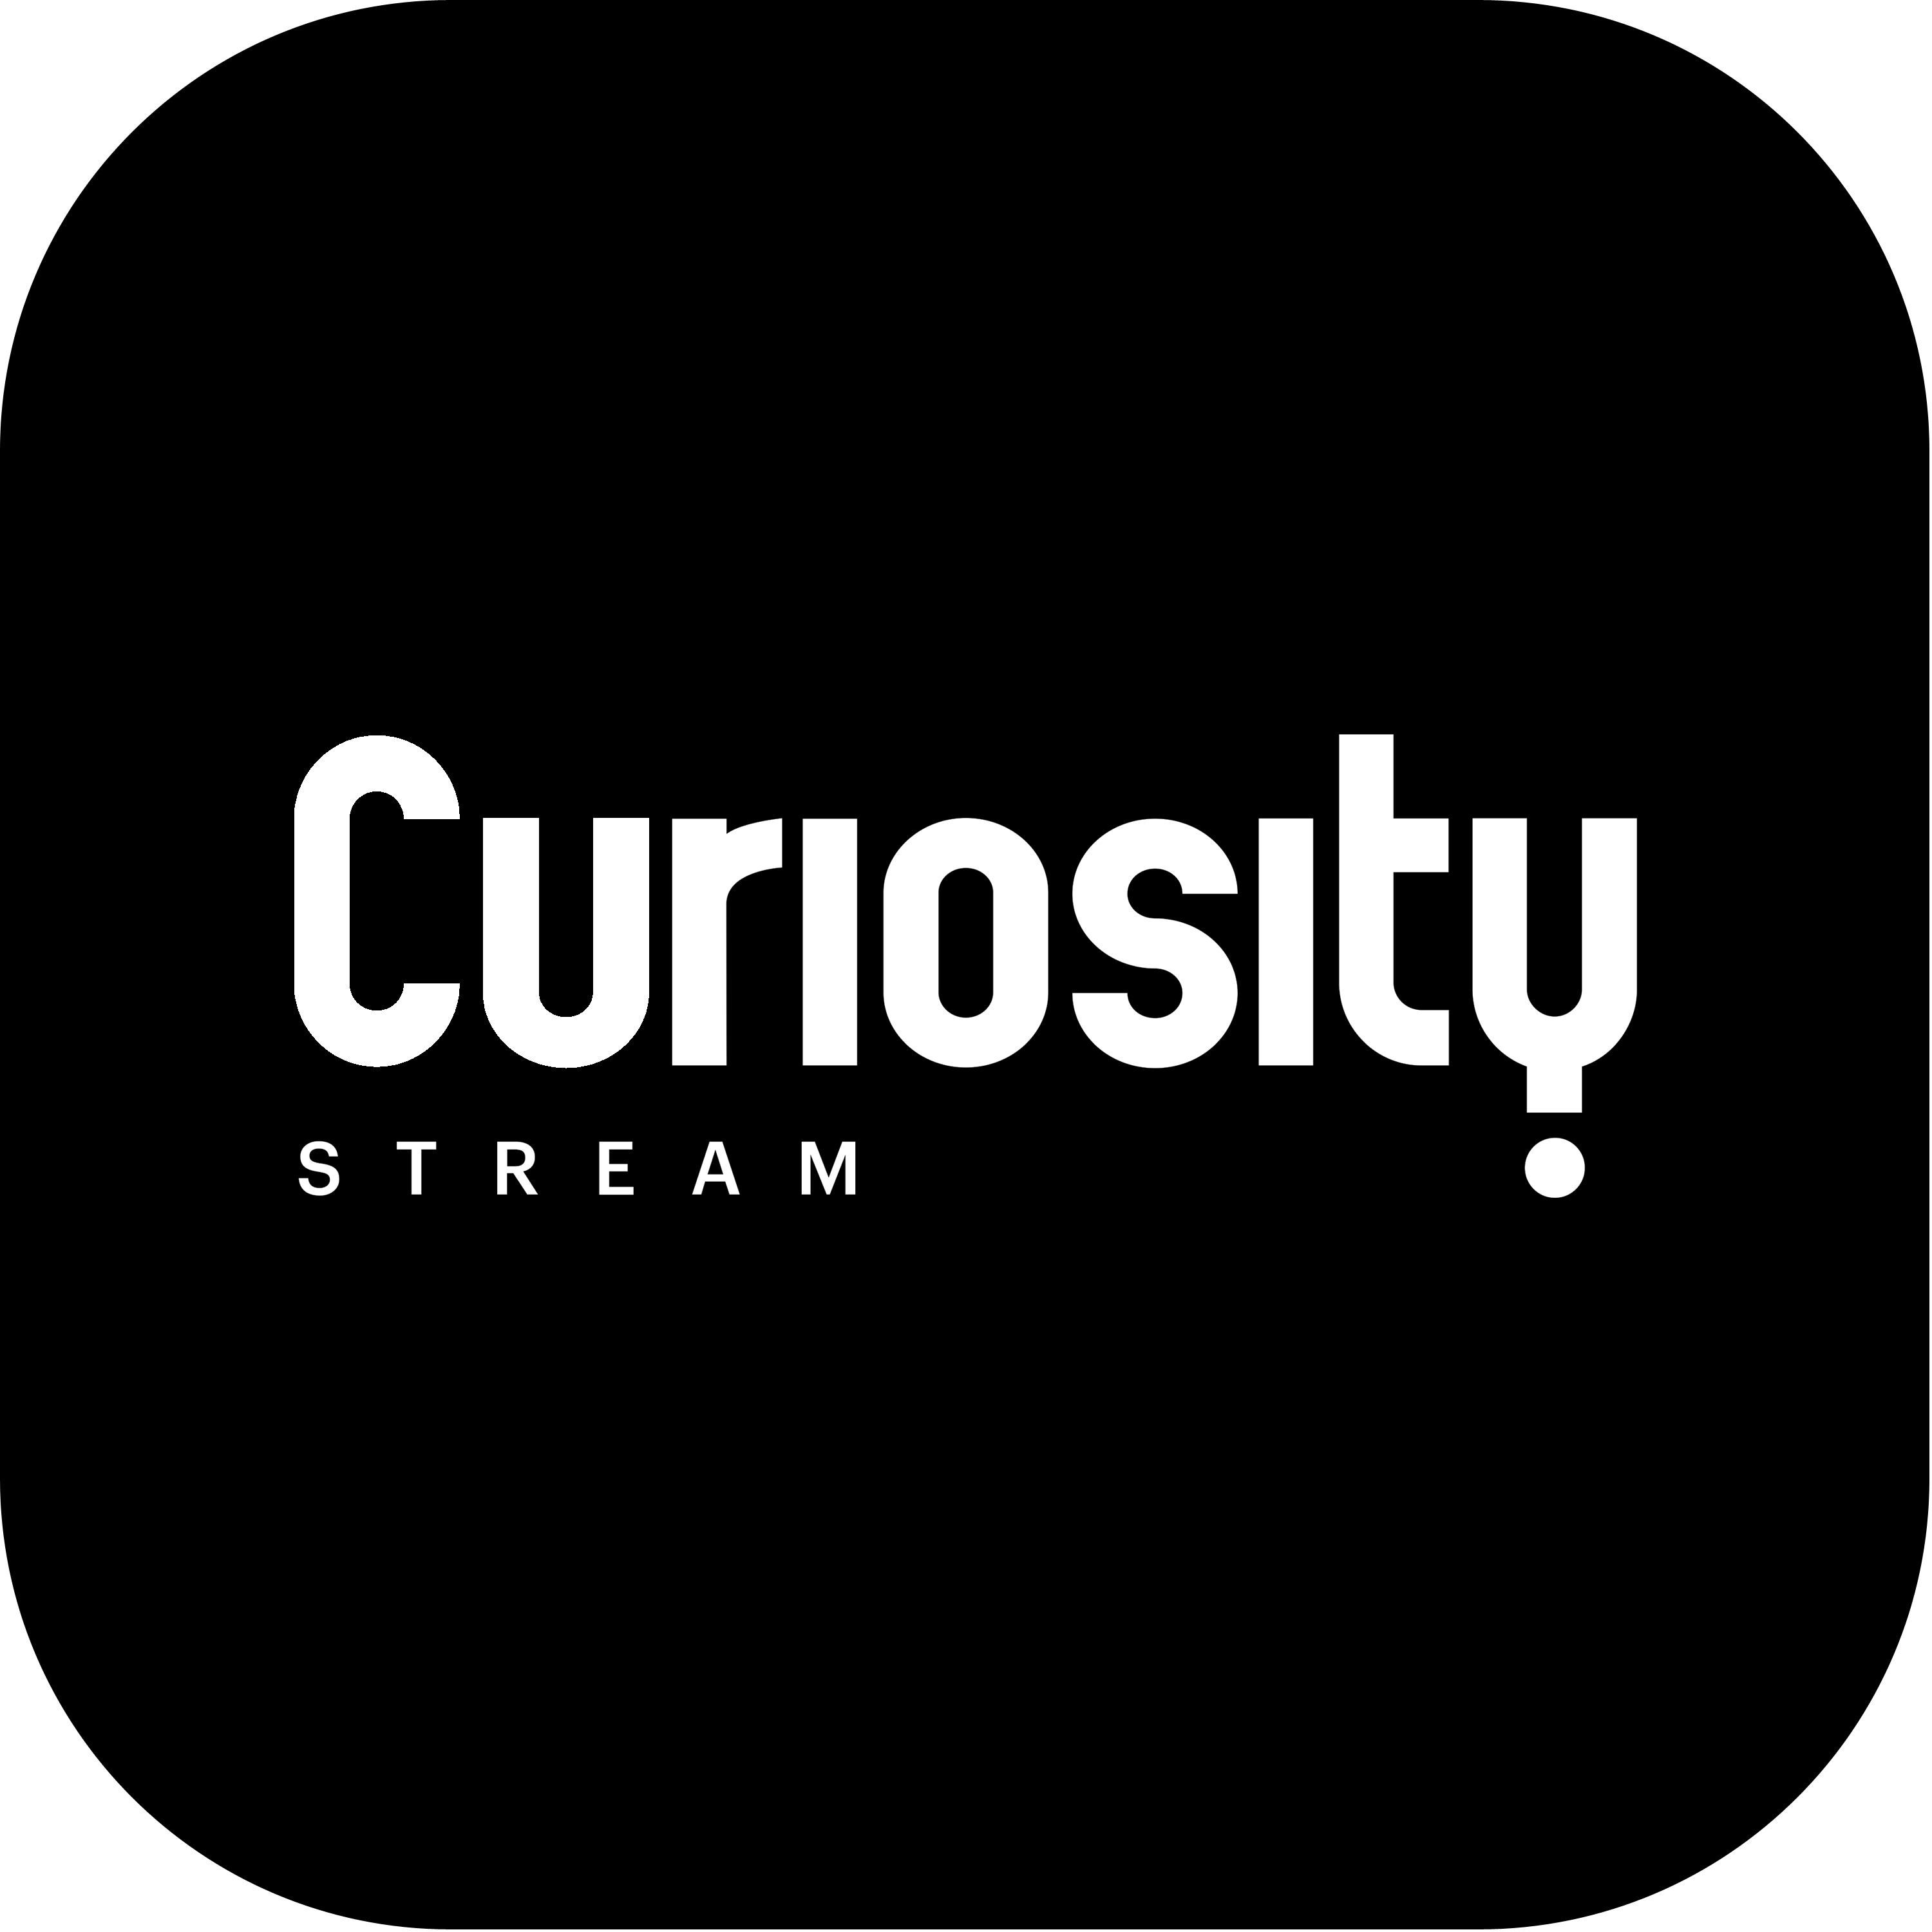 Curiosity Stream Logo Transparent Picture